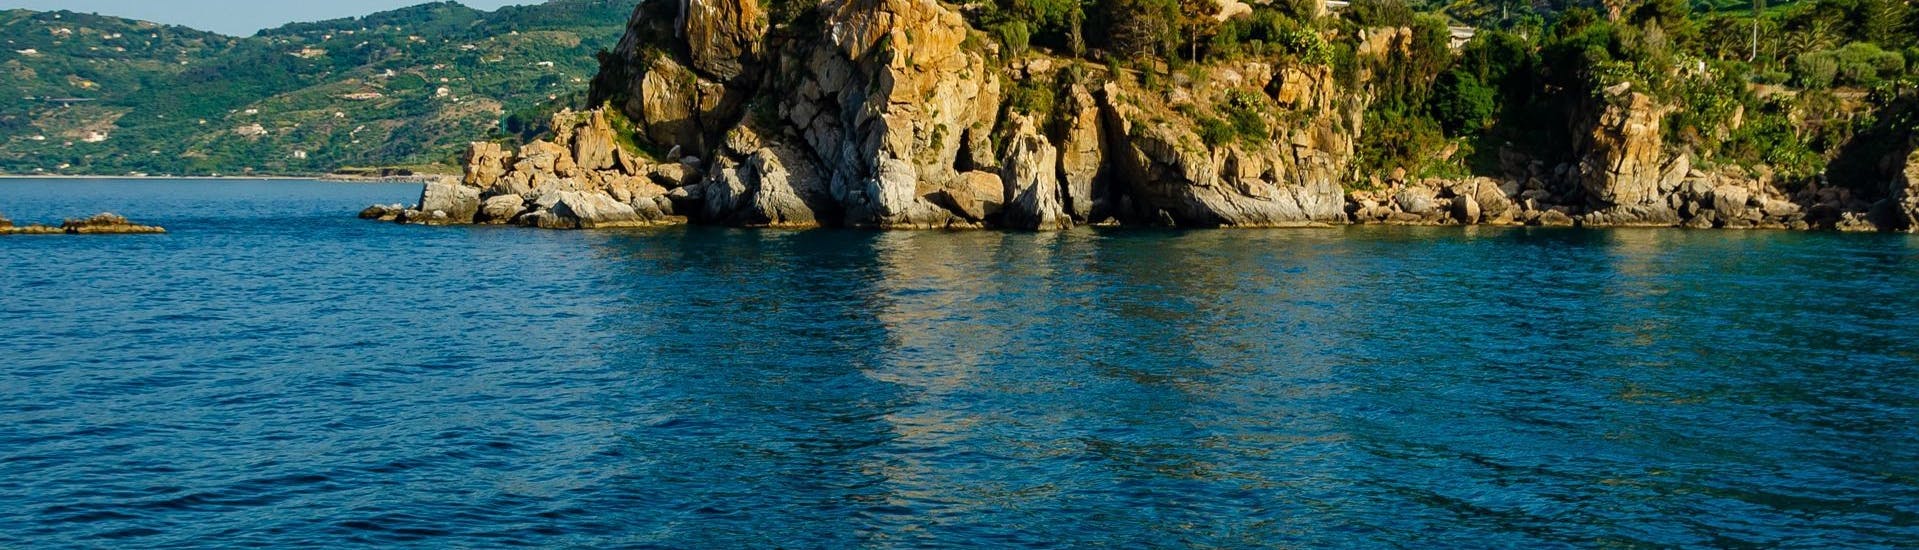 Bild der Küste von Cefalù, aufgenommen von einem Boot der Marina Yachting Cefalù während der privaten RIB Bootstour von Cefalù zur Mondello Bucht.